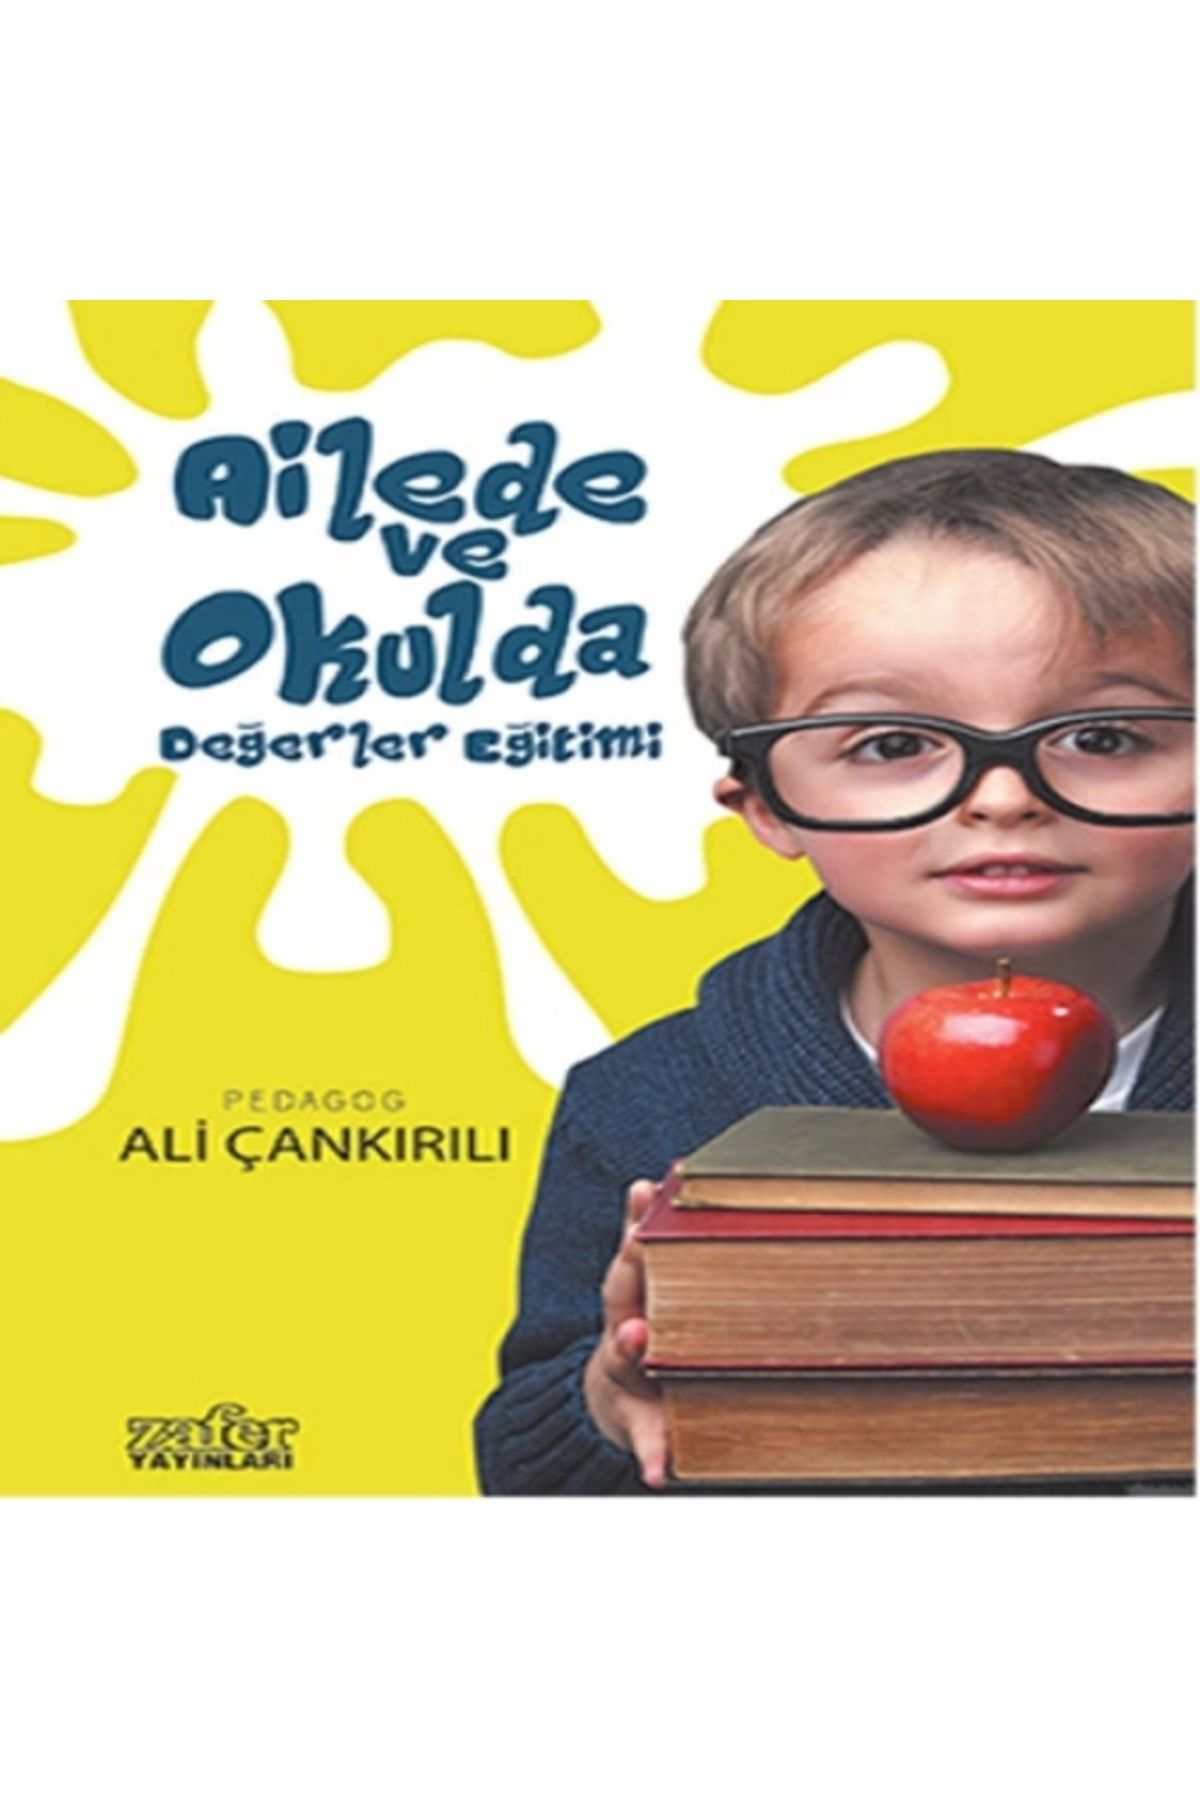 Zafer Yayınları Ailede ve Okulda Değerler Eğitimi / Ali Çankırılı